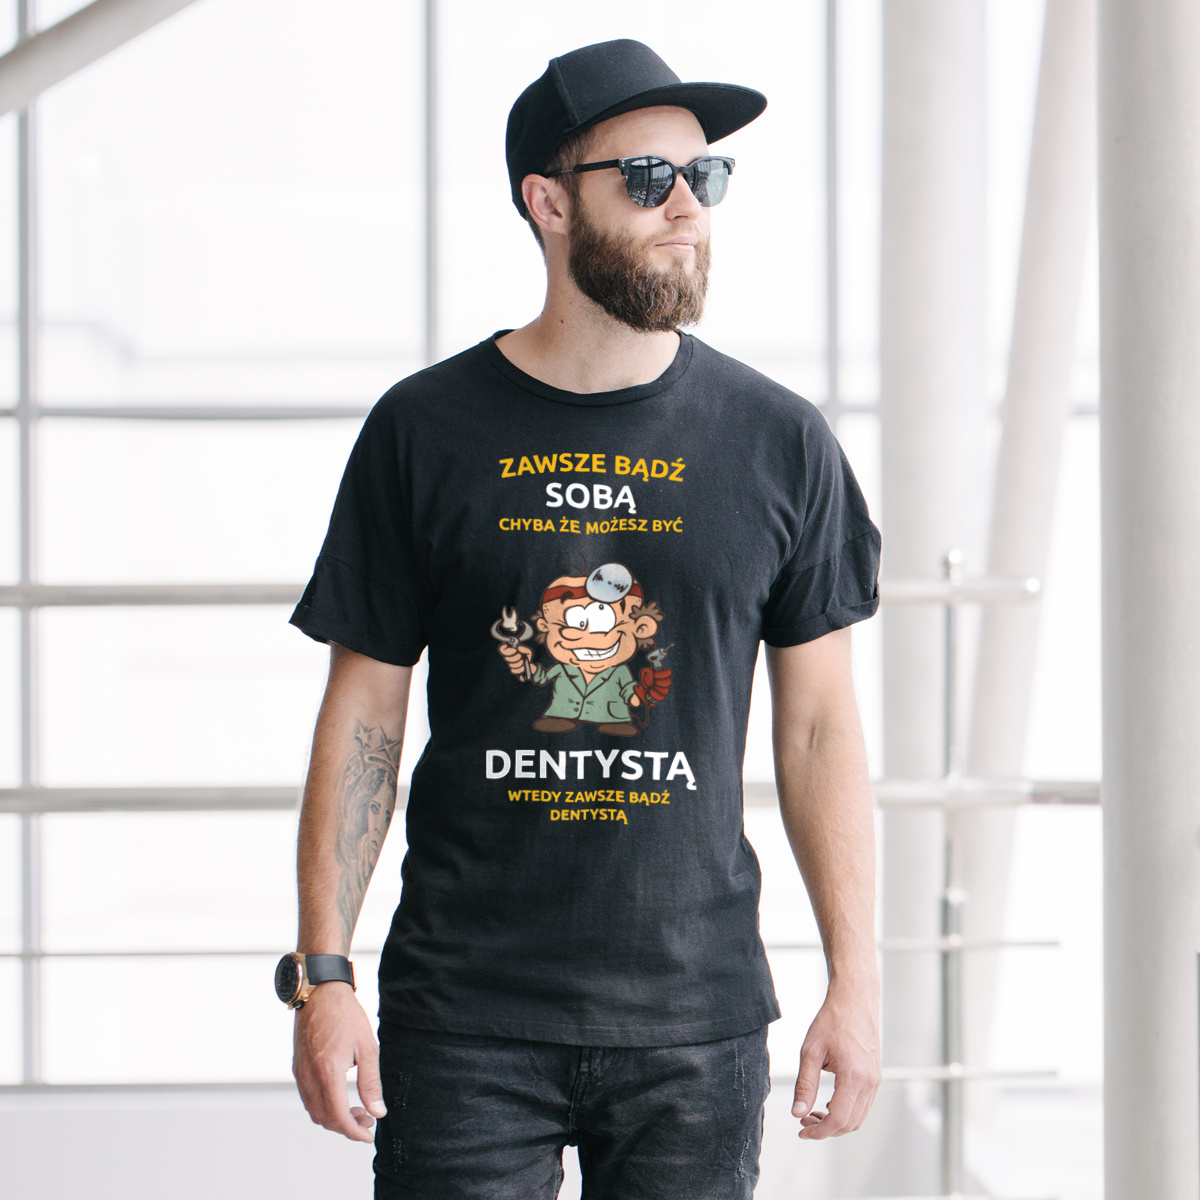 Zawsze bądź sobą, chyba że możesz być dentystą - Męska Koszulka Czarna